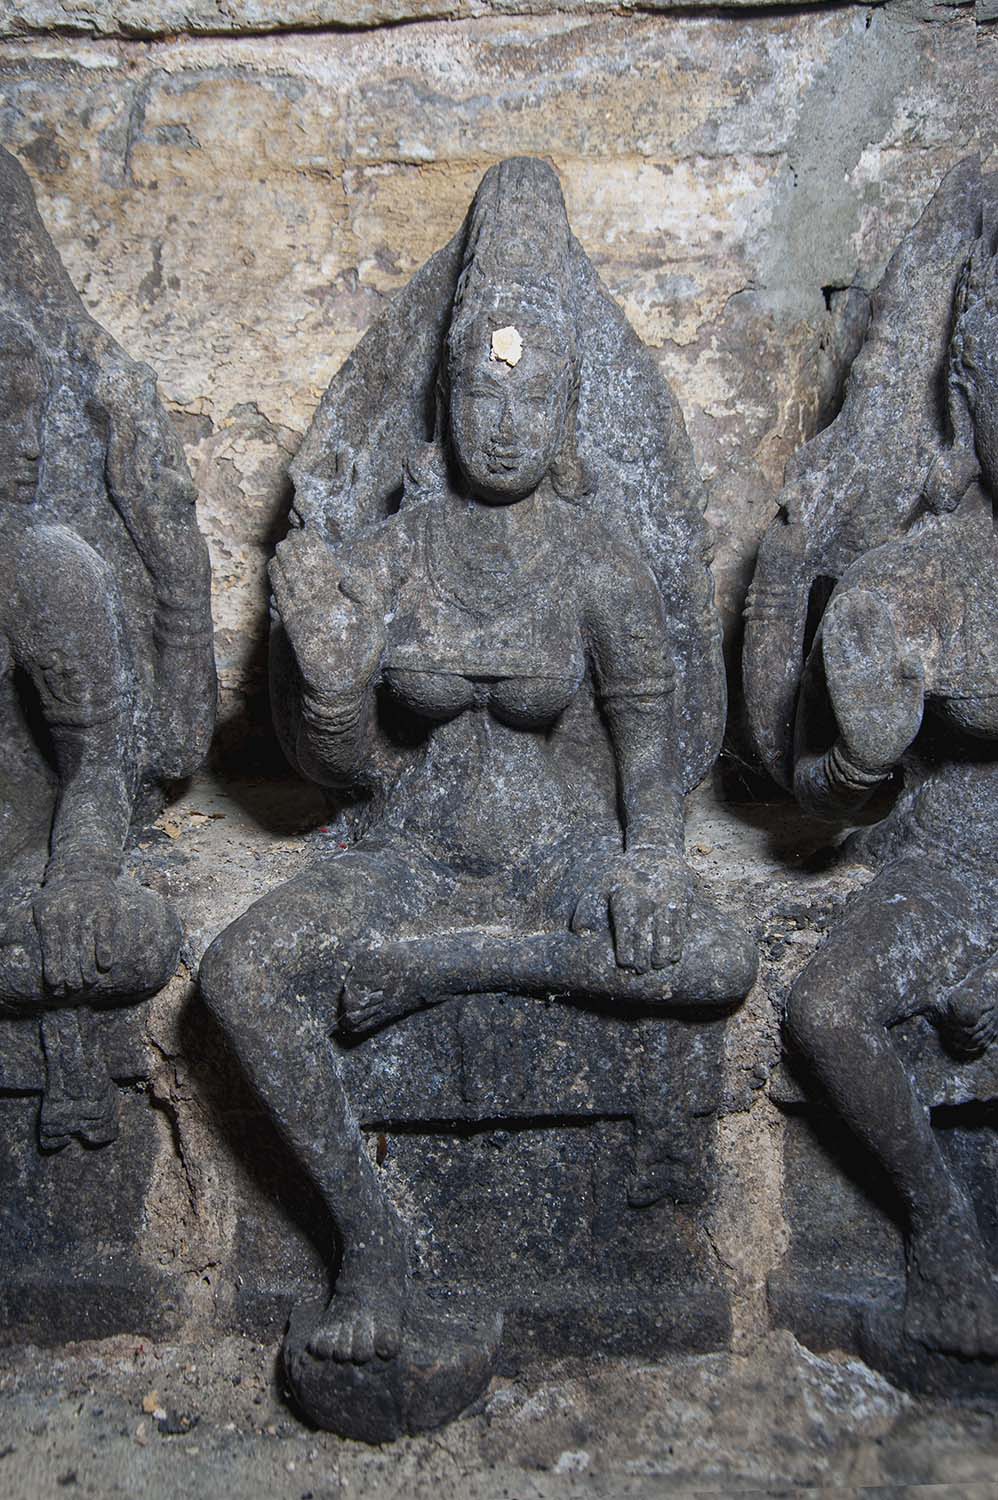 Irattakkoil (Twin Temples), Keelaiyur, Ariyalur , Tamil Nadu